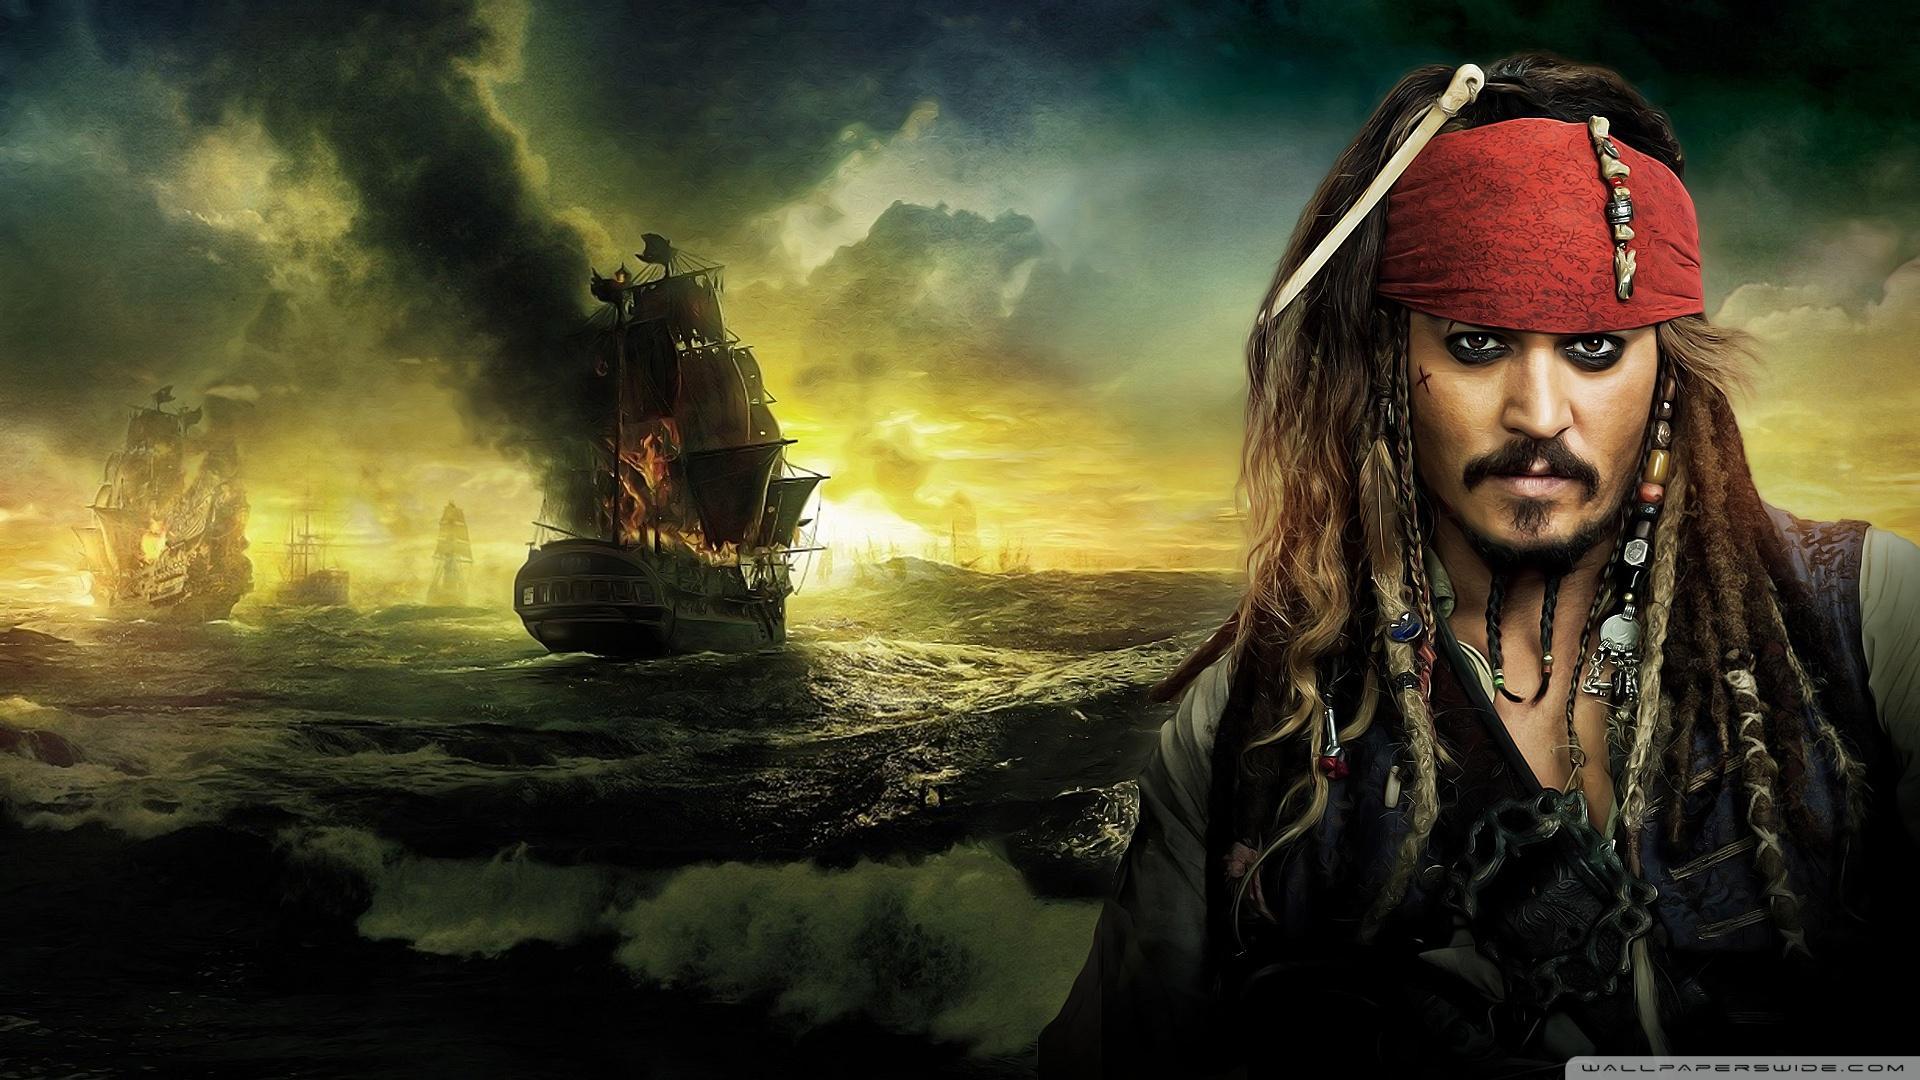 Fondos de Piratas del Caribe